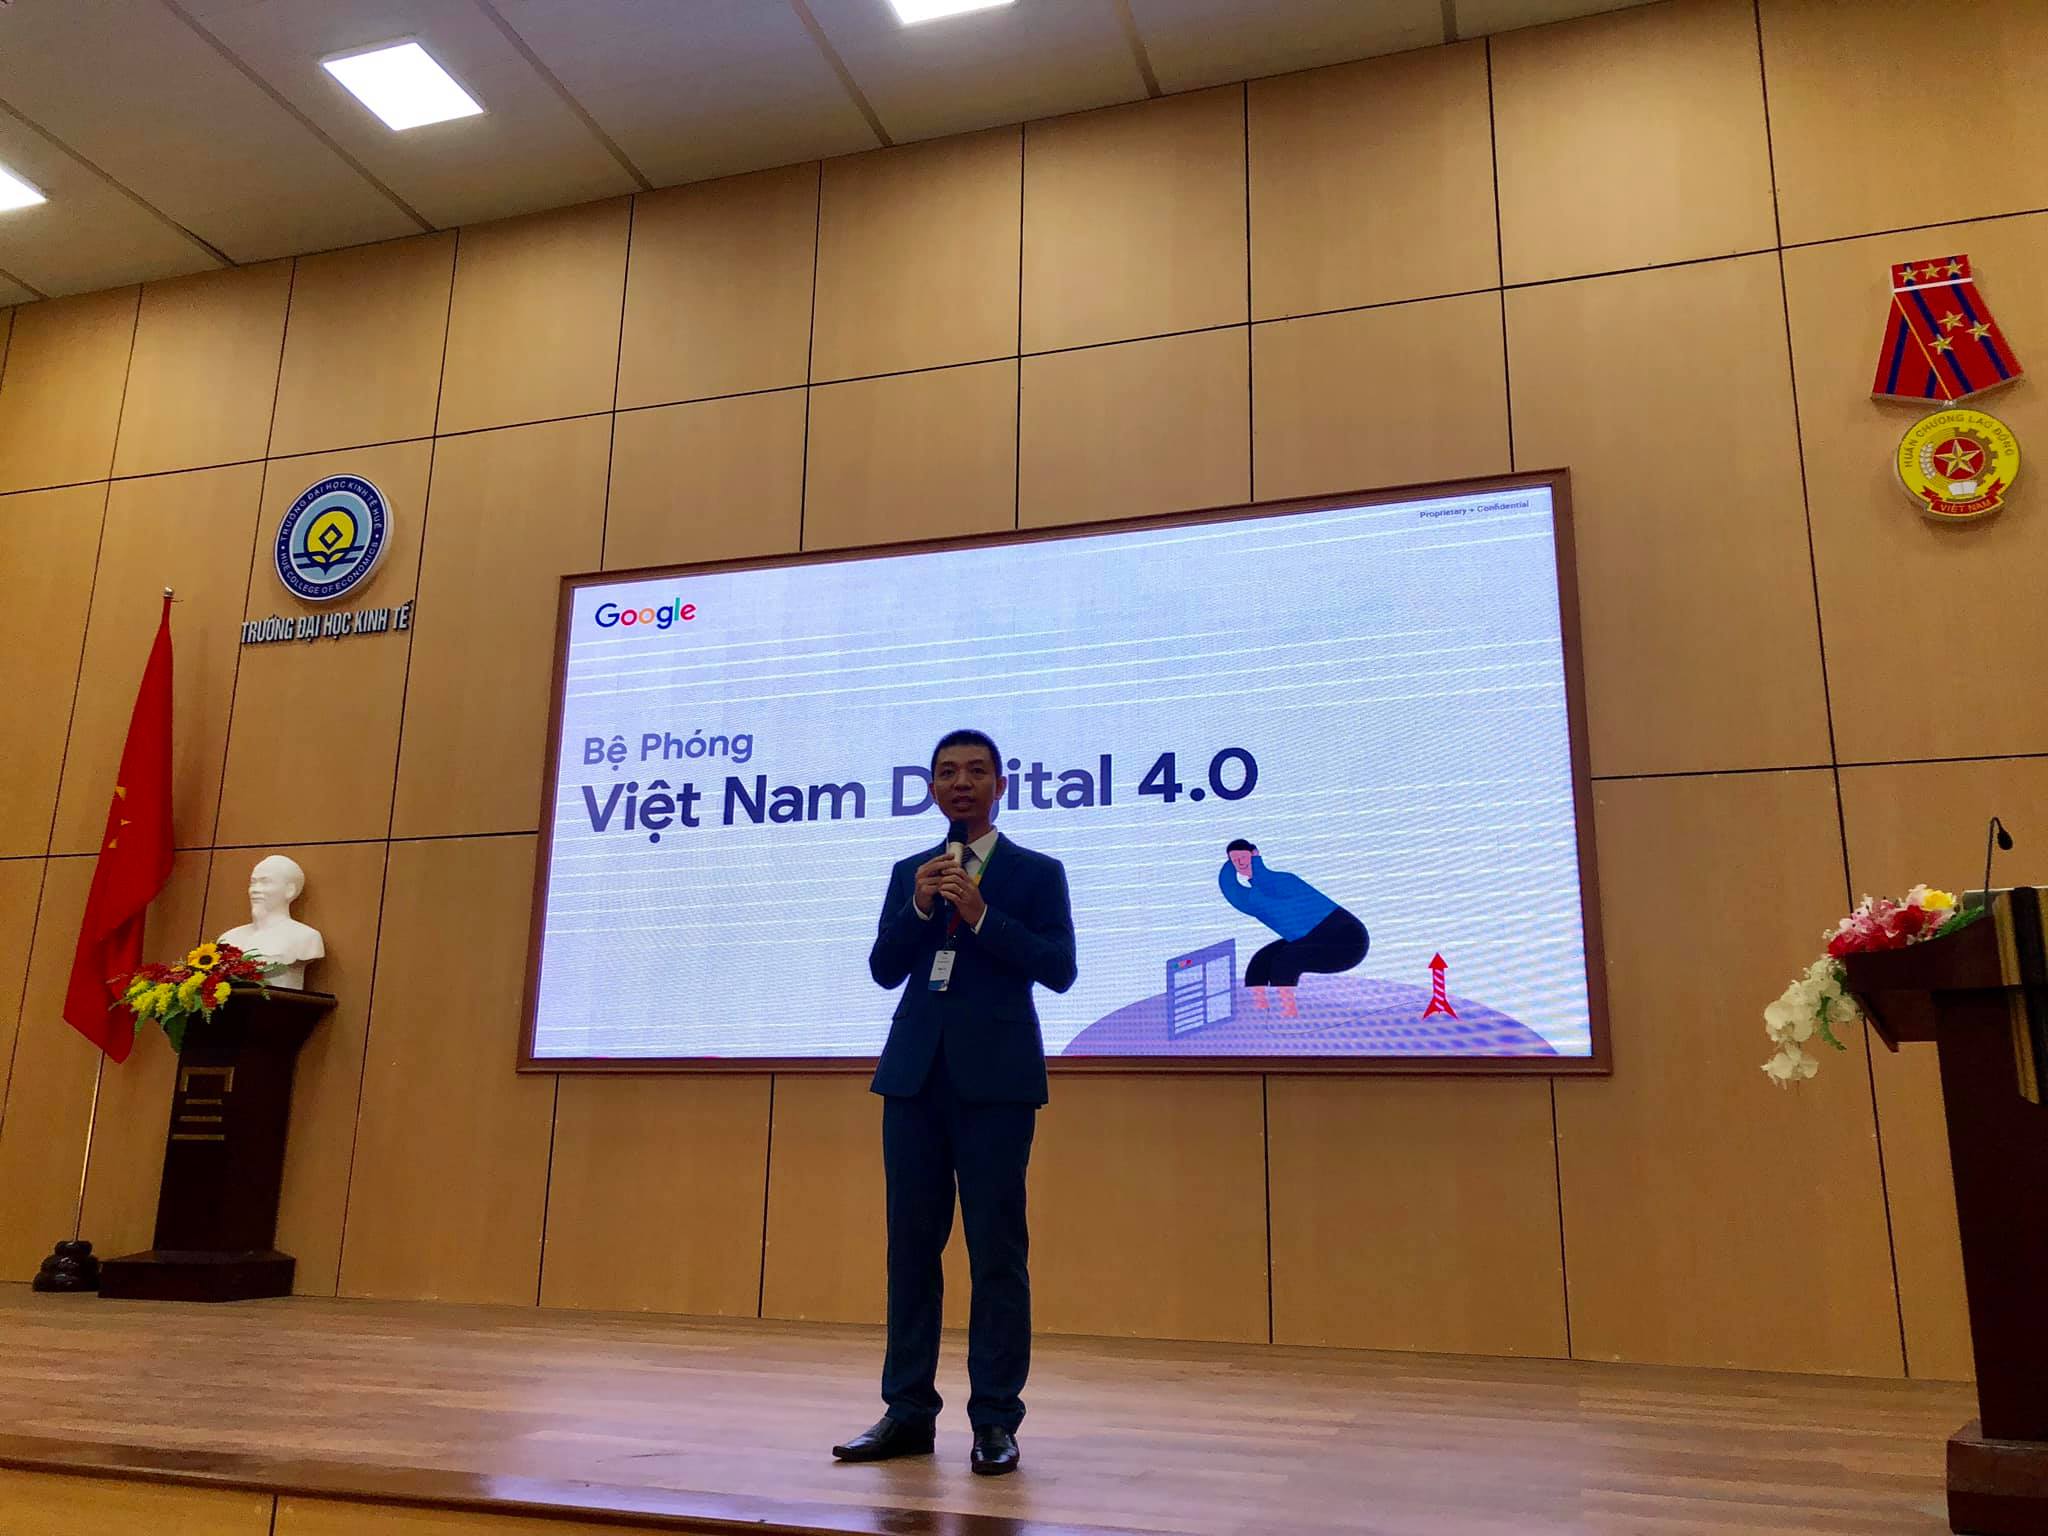 OABI tổ chức chương trình Vietnam Digital 4.0 cùng GOOGLE & trường ĐH Kinh Tế 2